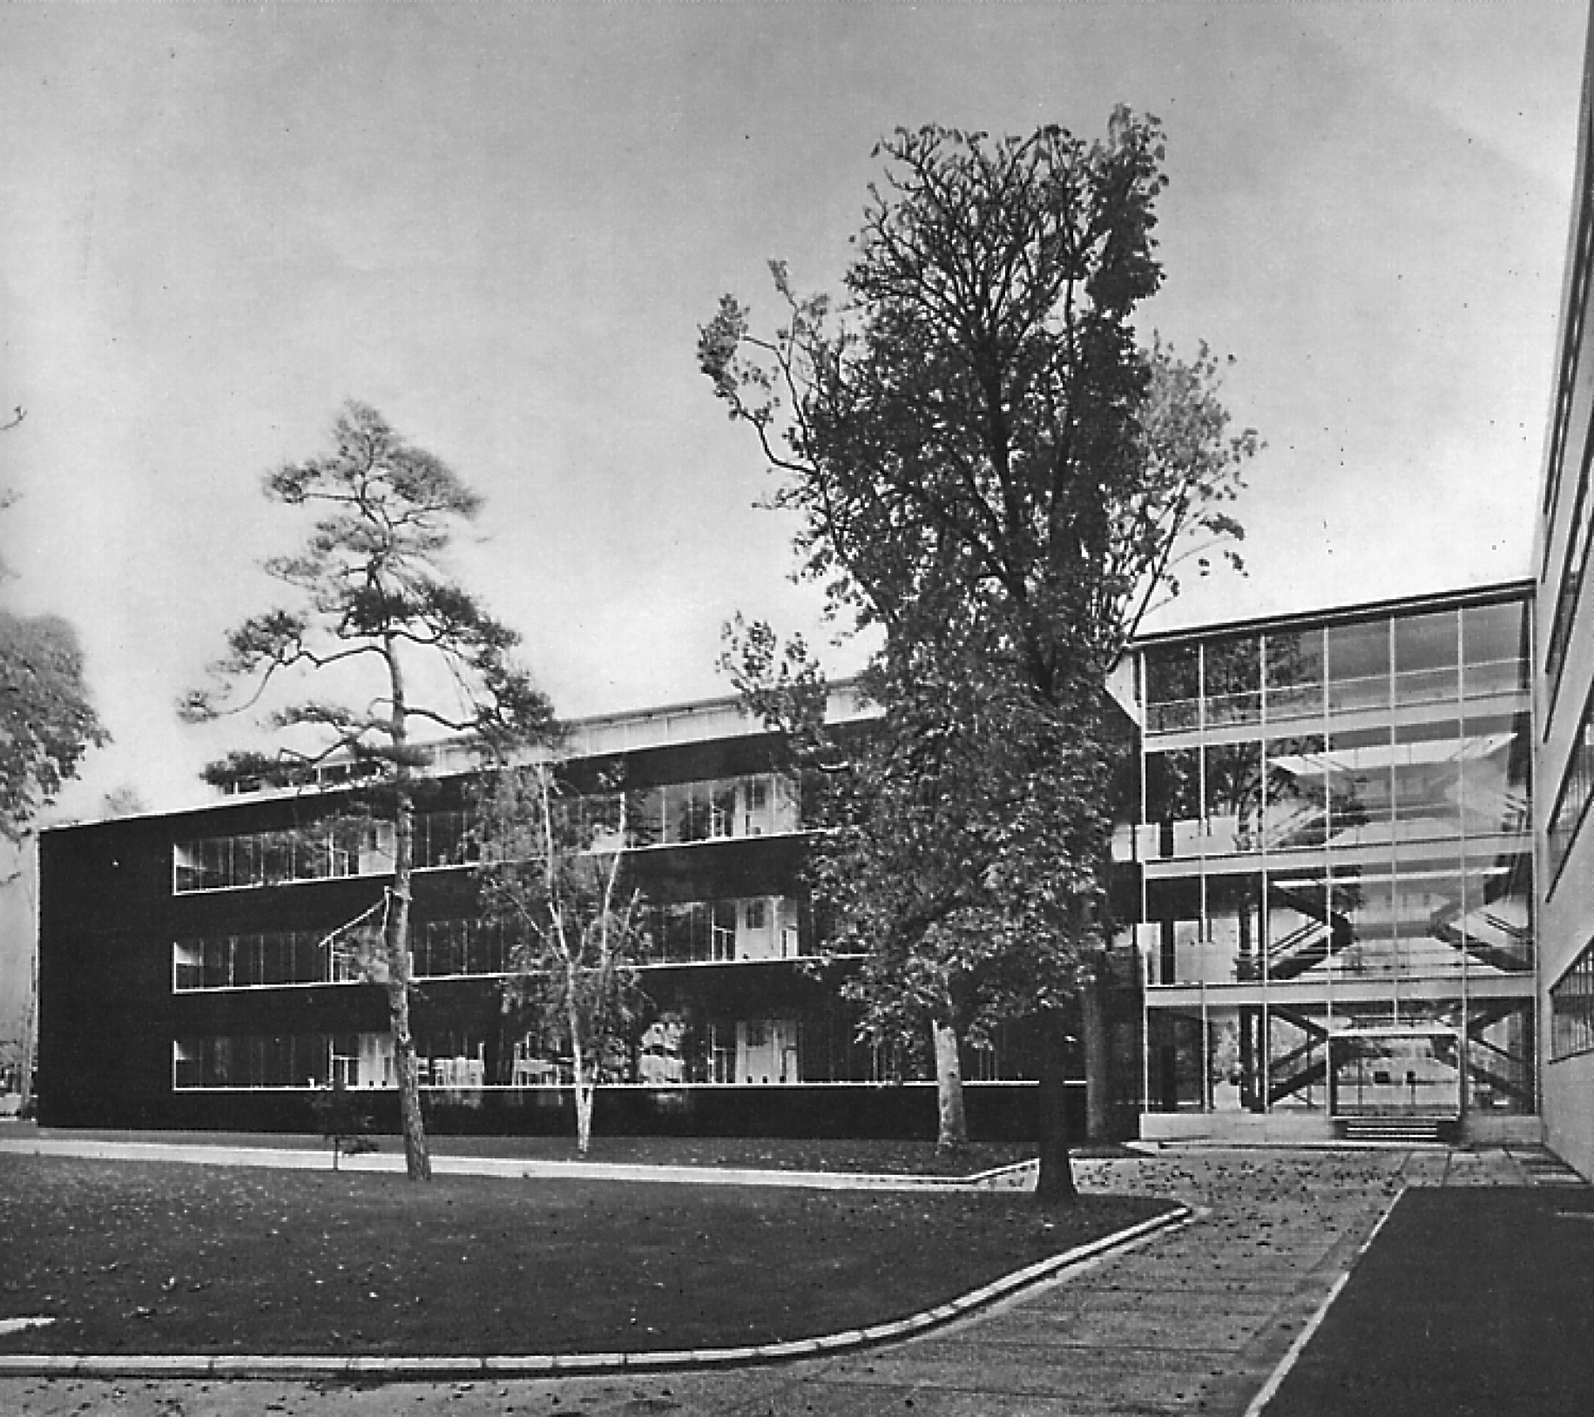 Institut français du pétrole, Rueil-Malmaison, 1955-58 (P. Dufau, arch.). Escalier central, façades, toiture et béquilles avec le concours de Jean Prouvé.